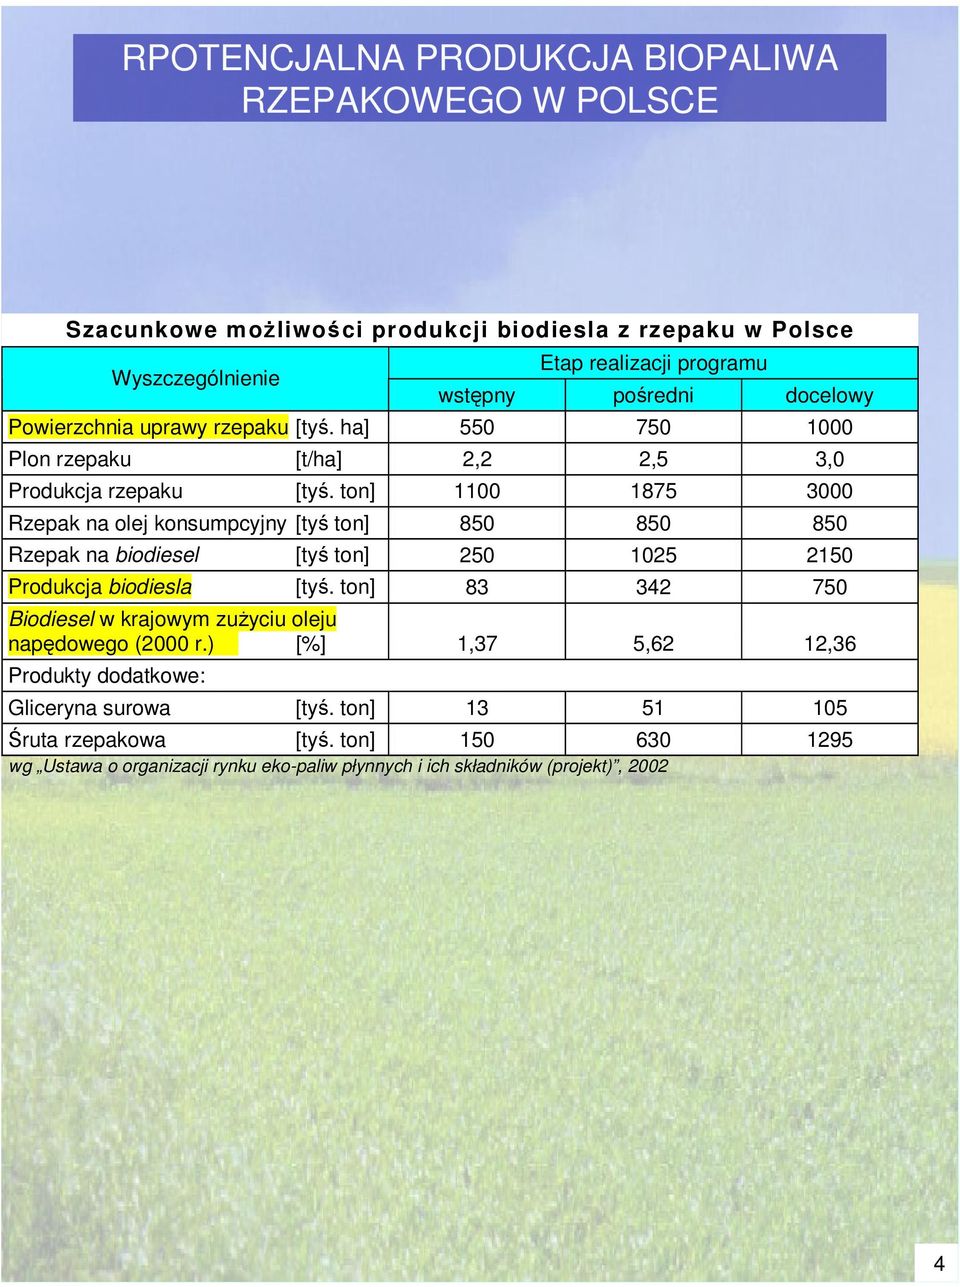 ton] 1100 1875 3000 Rzepak na olej konsumpcyjny [ty ton] 850 850 850 Rzepak na biodiesel [ty ton] 250 1025 2150 Produkcja biodiesla [ty.